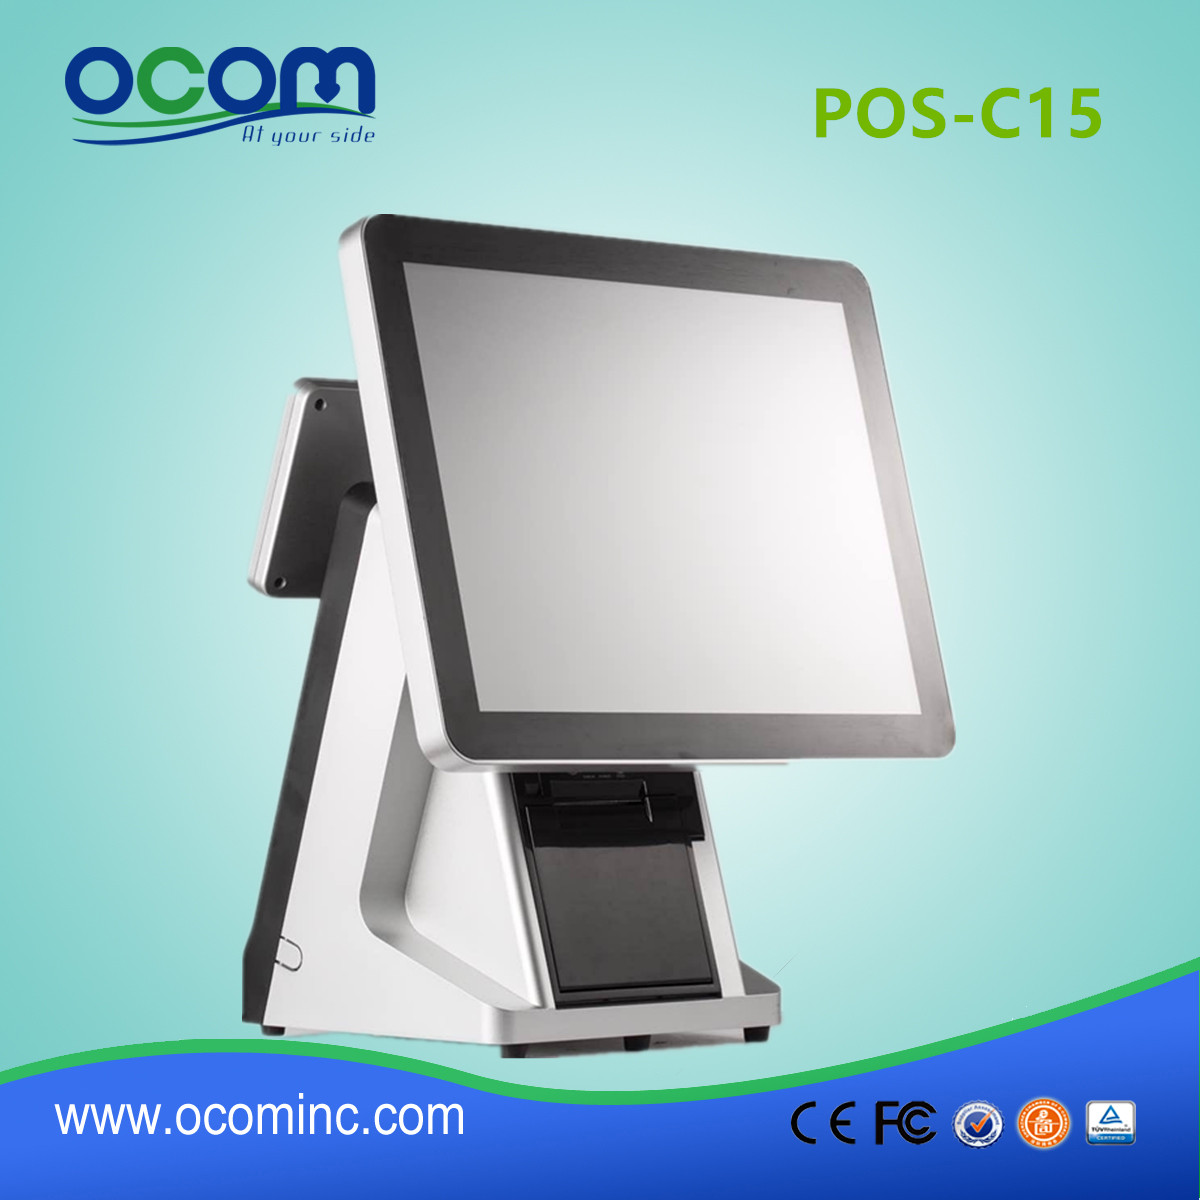 POS-C15-China hot selling pos machine price